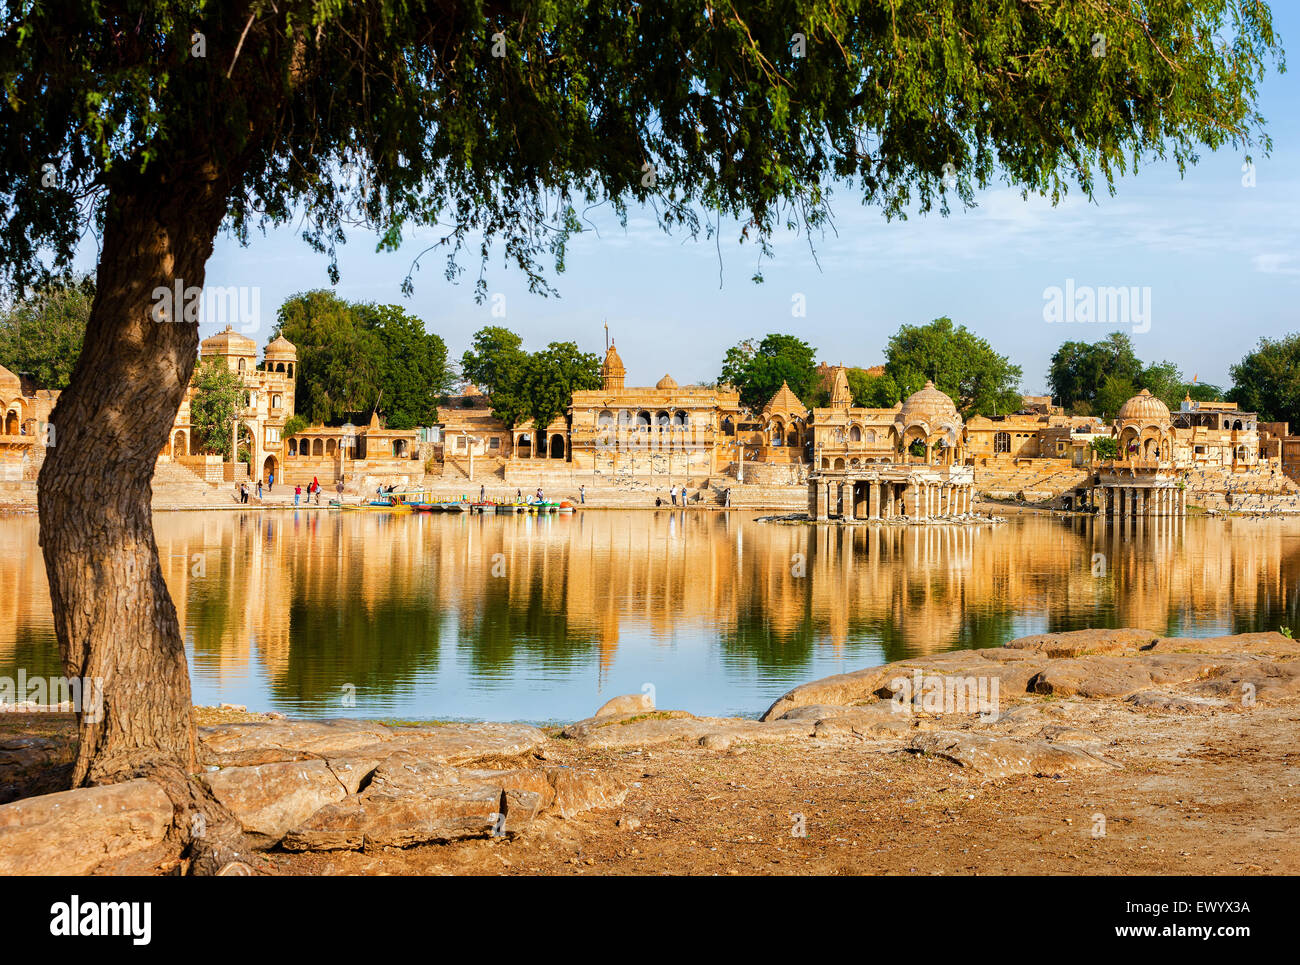 Gadi Sagar (Gadisar Lake) est l'une des plus importantes attractions touristiques dans la région de Jaisalmer, Rajasthan, Inde du Nord. Artisticall Banque D'Images